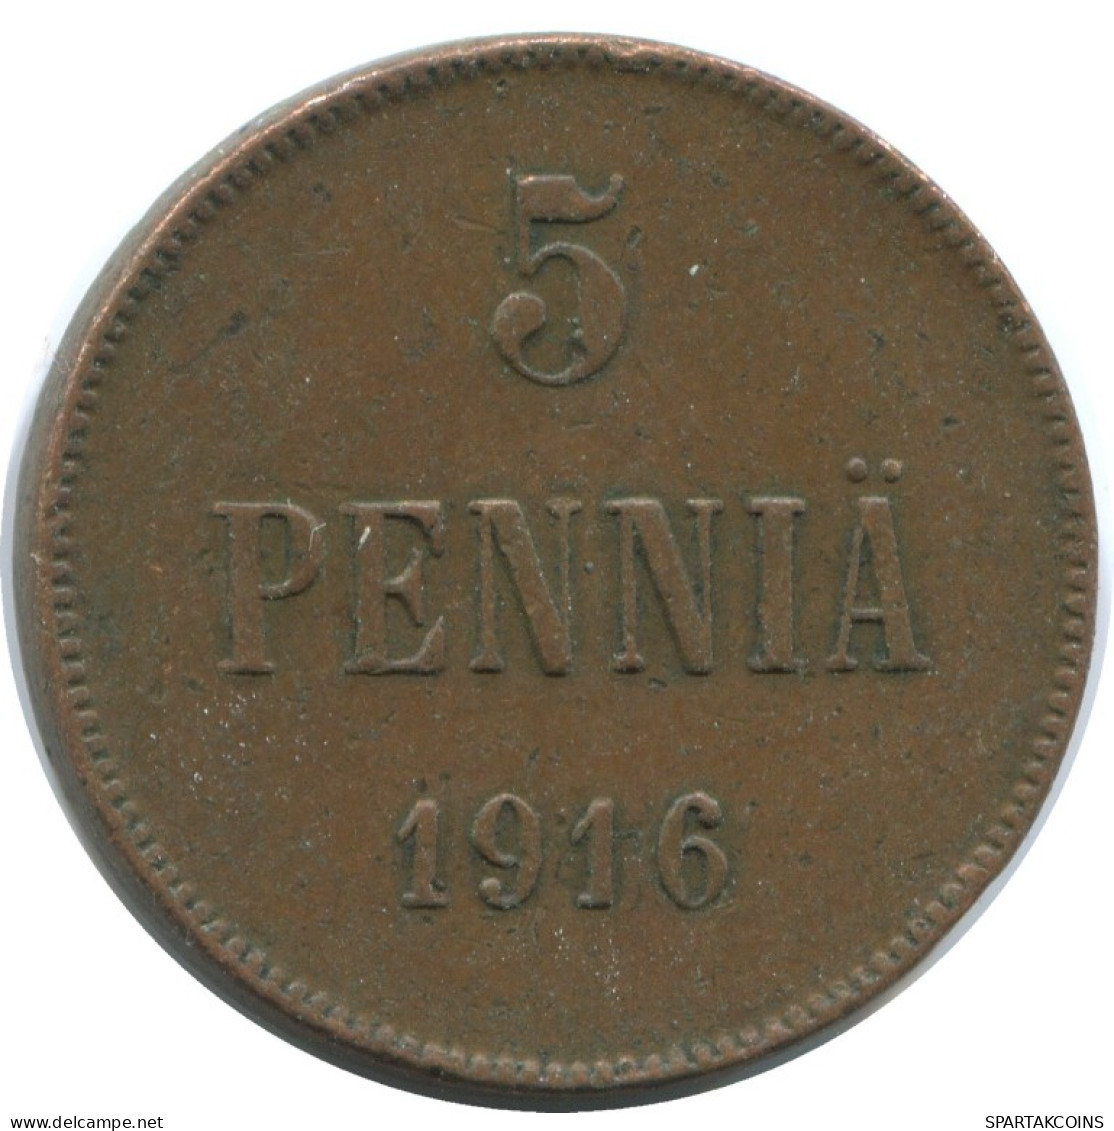 5 PENNIA 1916 FINLANDIA FINLAND Moneda RUSIA RUSSIA EMPIRE #AB167.5.E.A - Finland